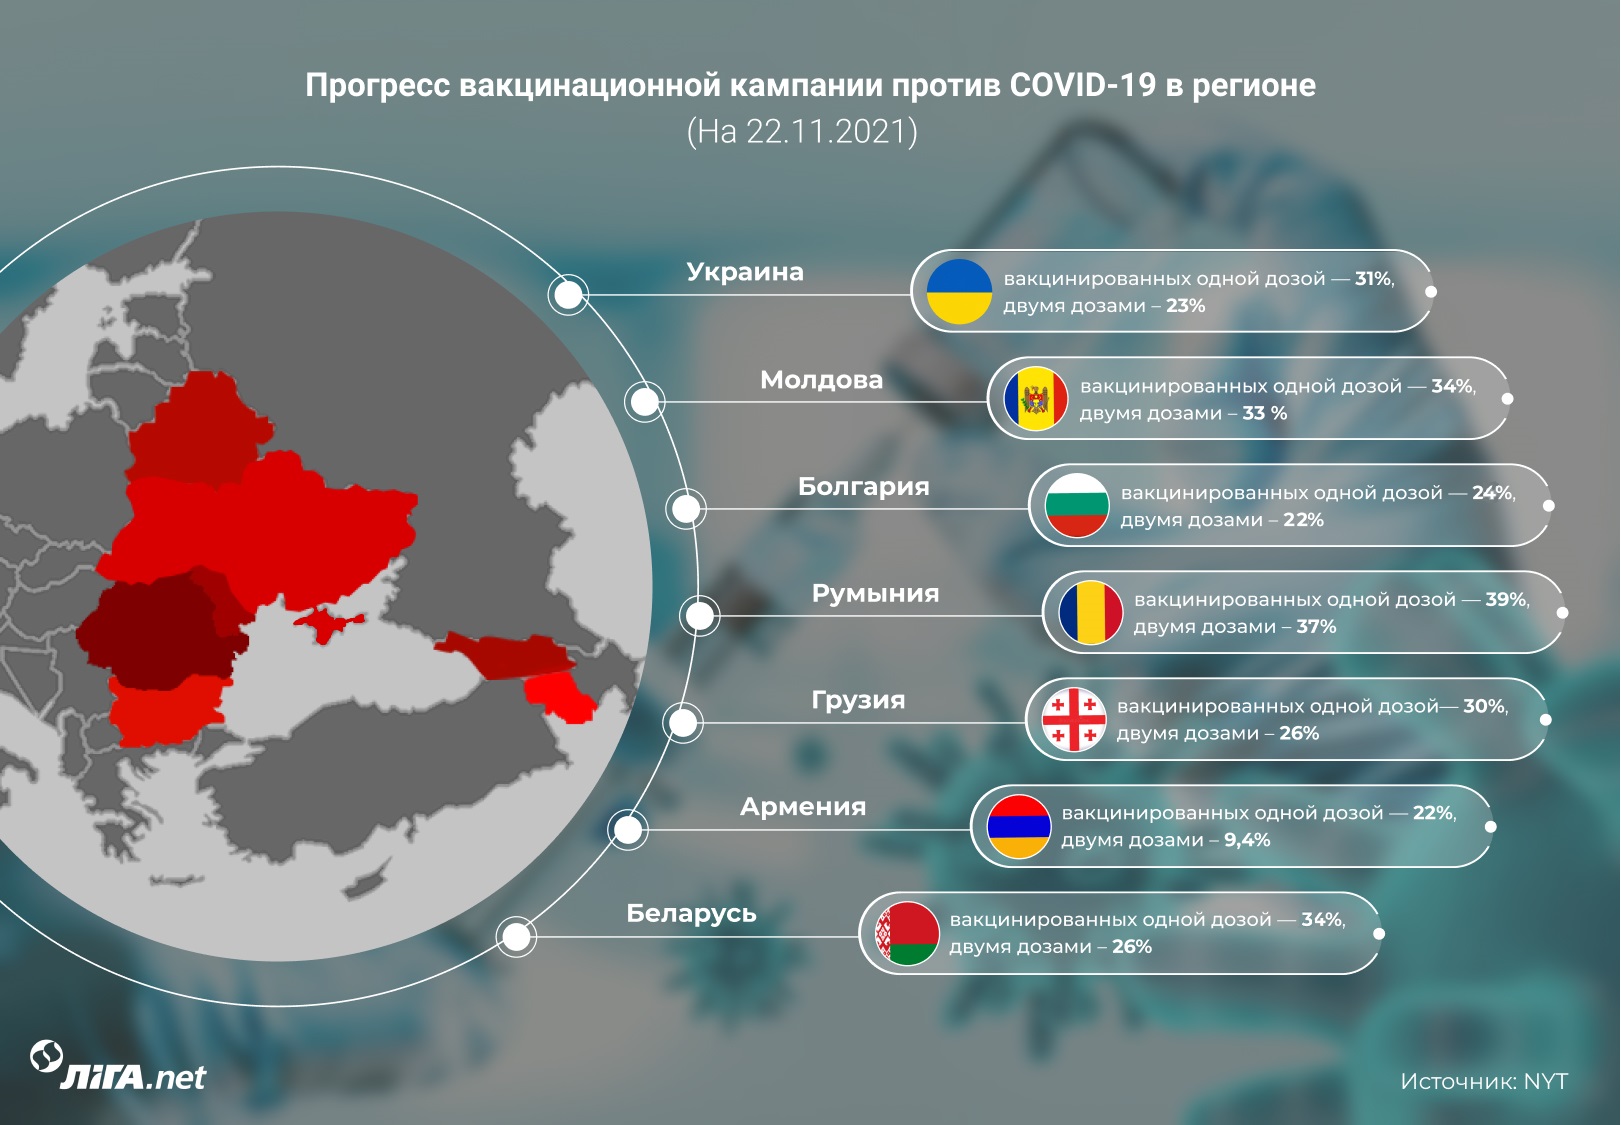 Боты, деньги, РПЦ. Как и почему РФ саботирует вакцинацию в Украине